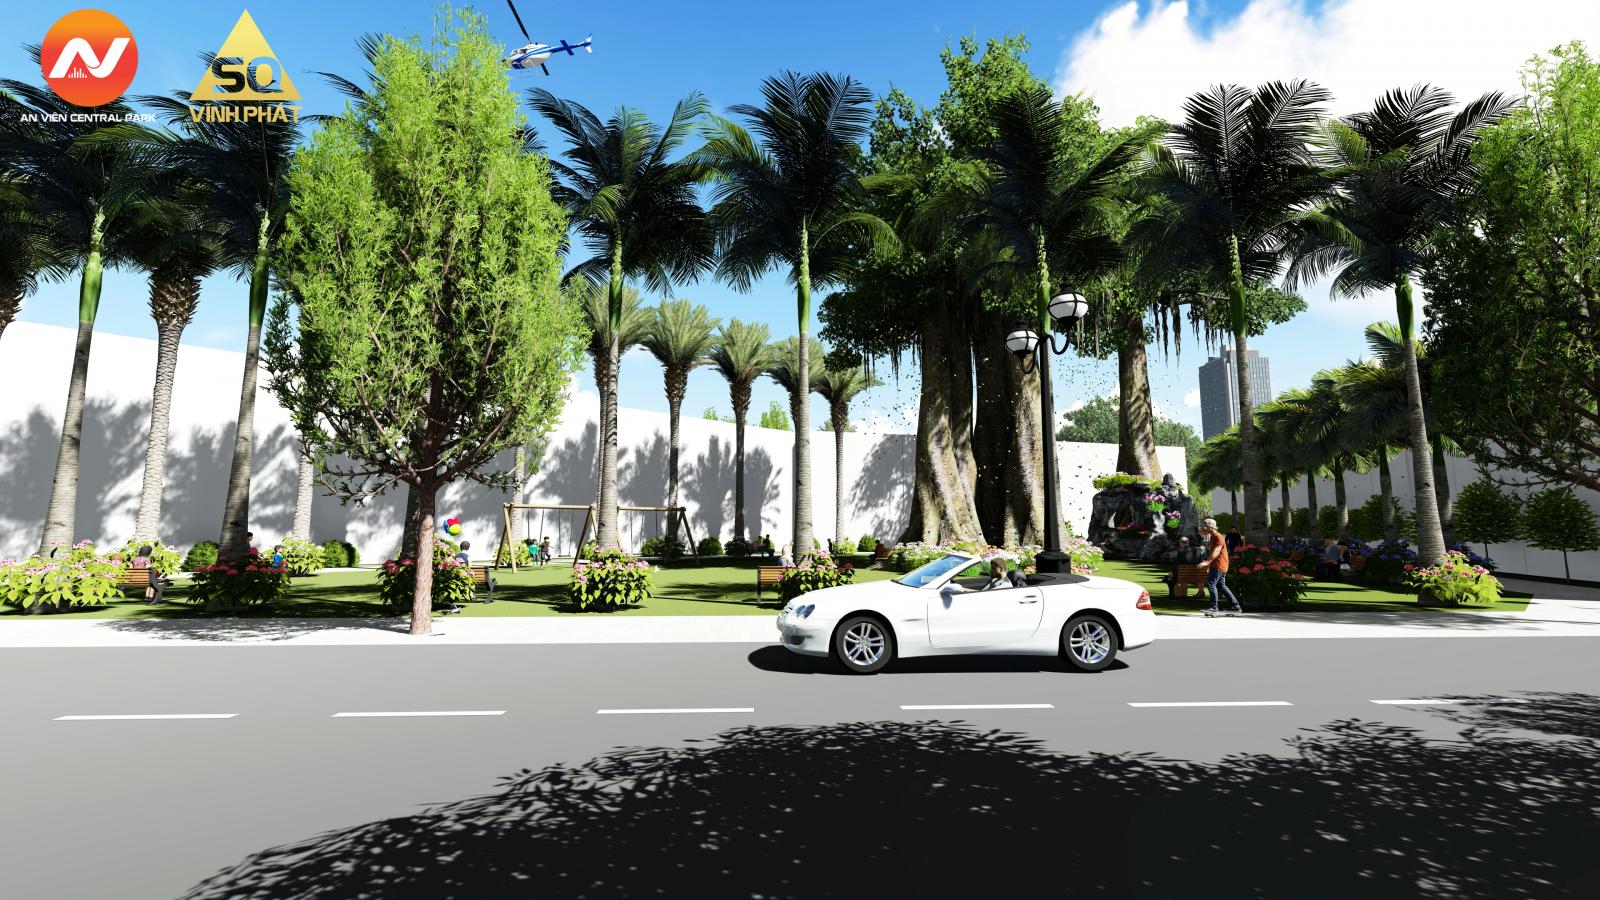 Hot!! dự án” An Viên Central Park”  mở bán GD1 Gía 750tr/lô LH:0905920910 Mr Quang